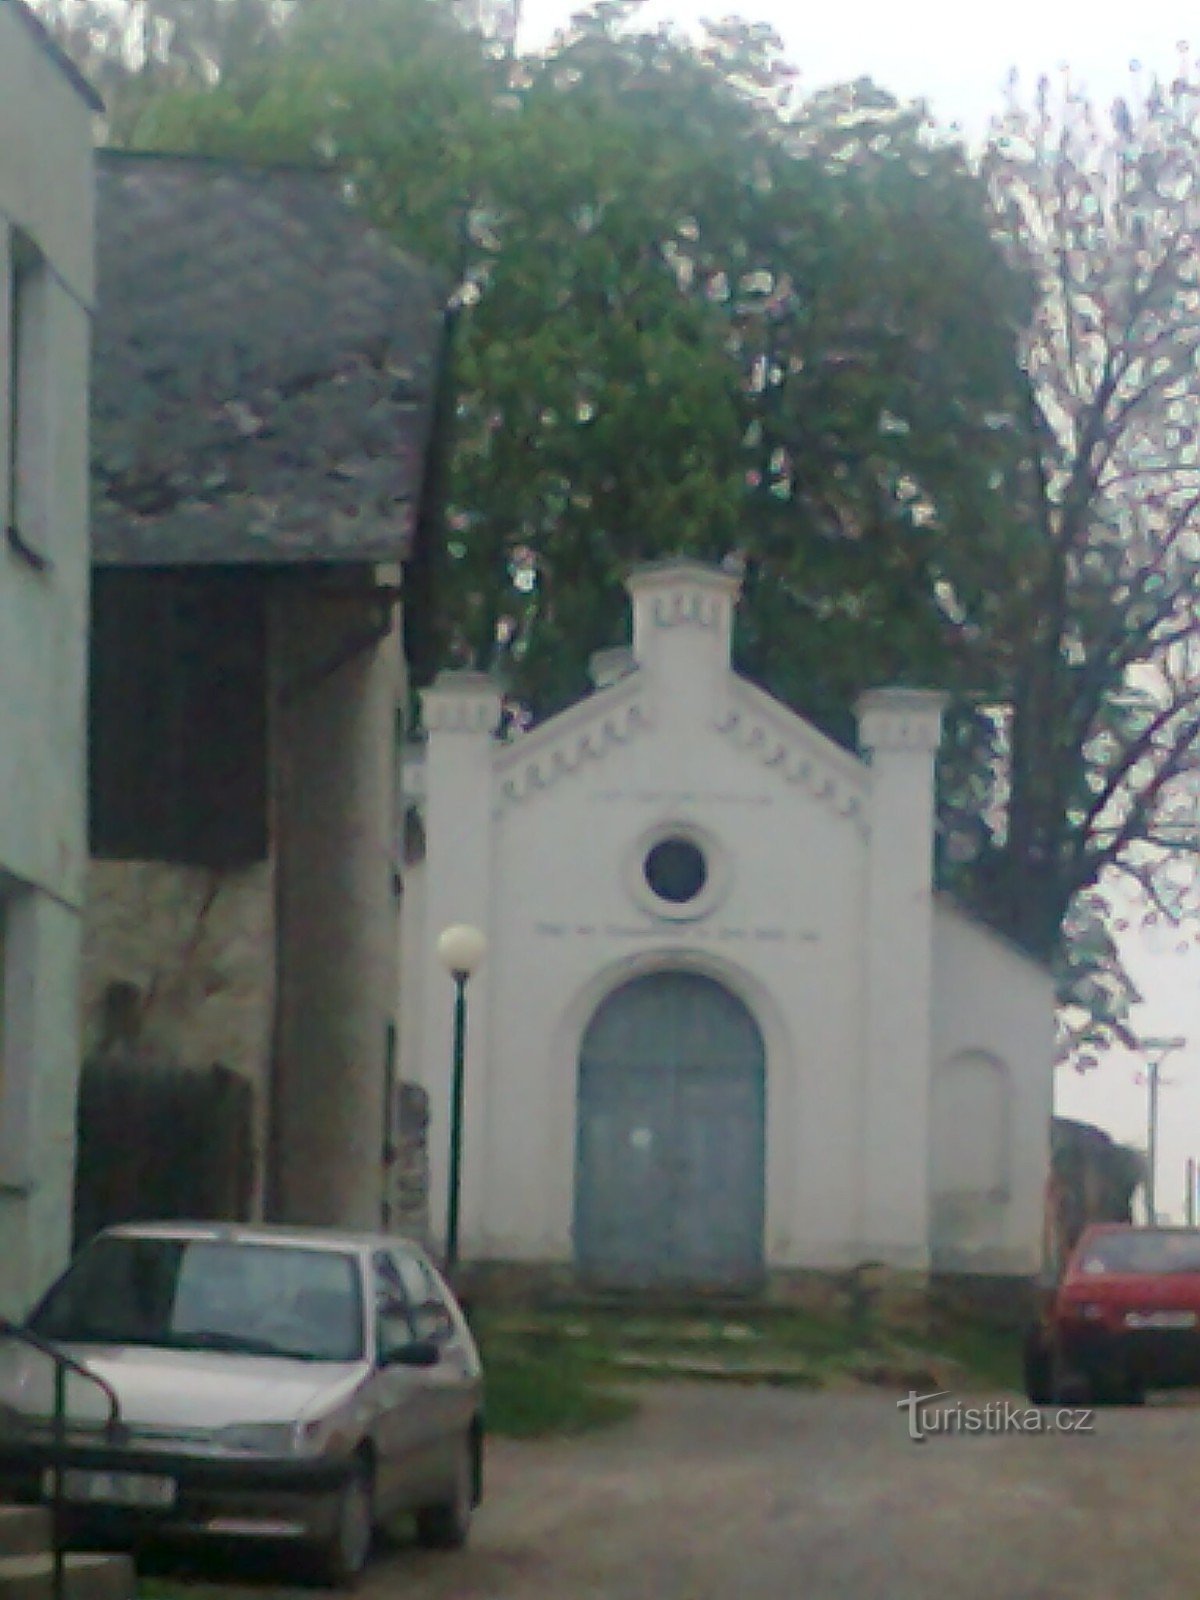 фото, зроблене з вхідних дверей єврейської синагоги